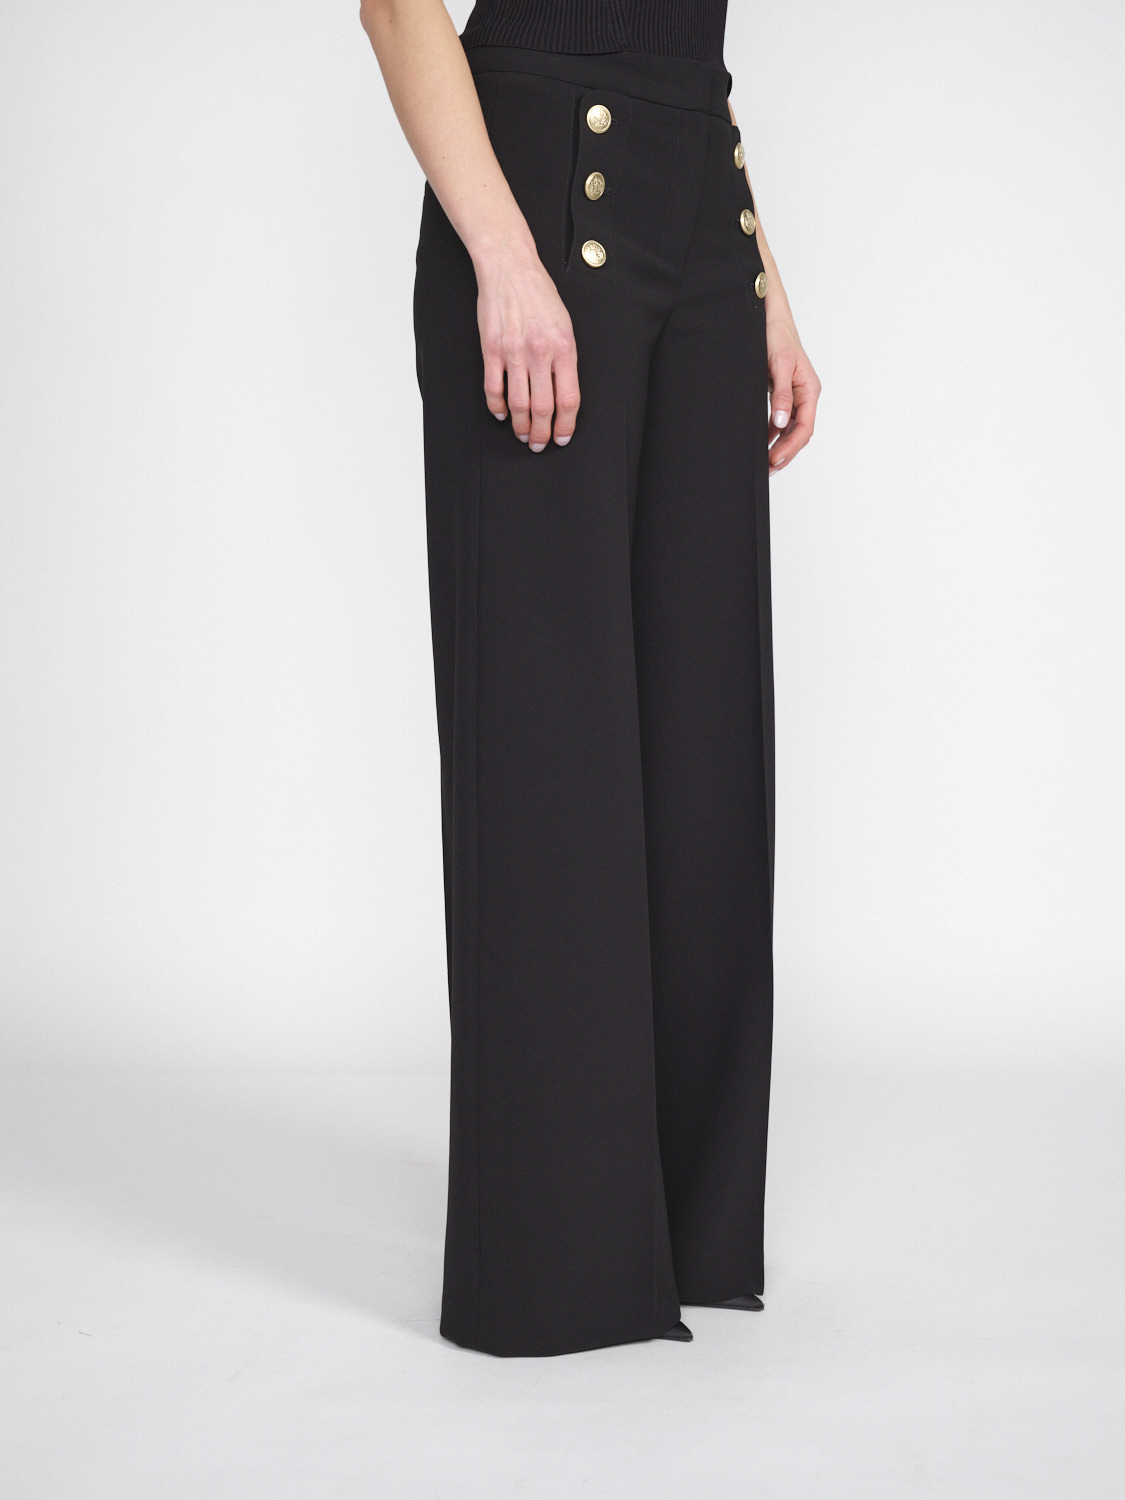 Seductive Bridget – Stretchige Hose mit goldfarbenen Knopfdetails   negro 34